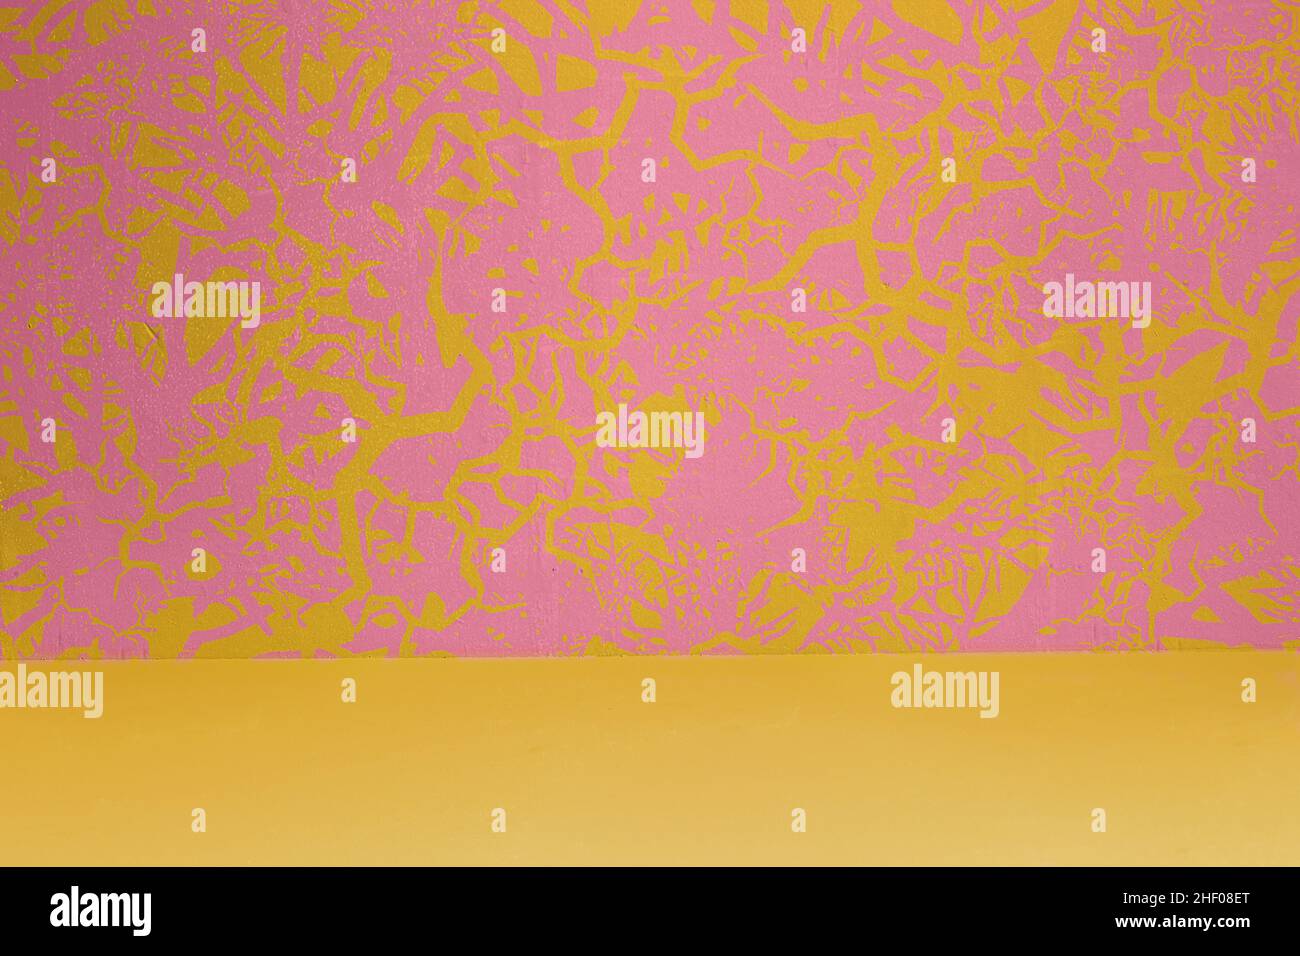 Mur d'art décoré de peintures formant des formes abstraites dynamiques sur fond pastel et sol jaune.Motifs originaux avec bac à texture Banque D'Images